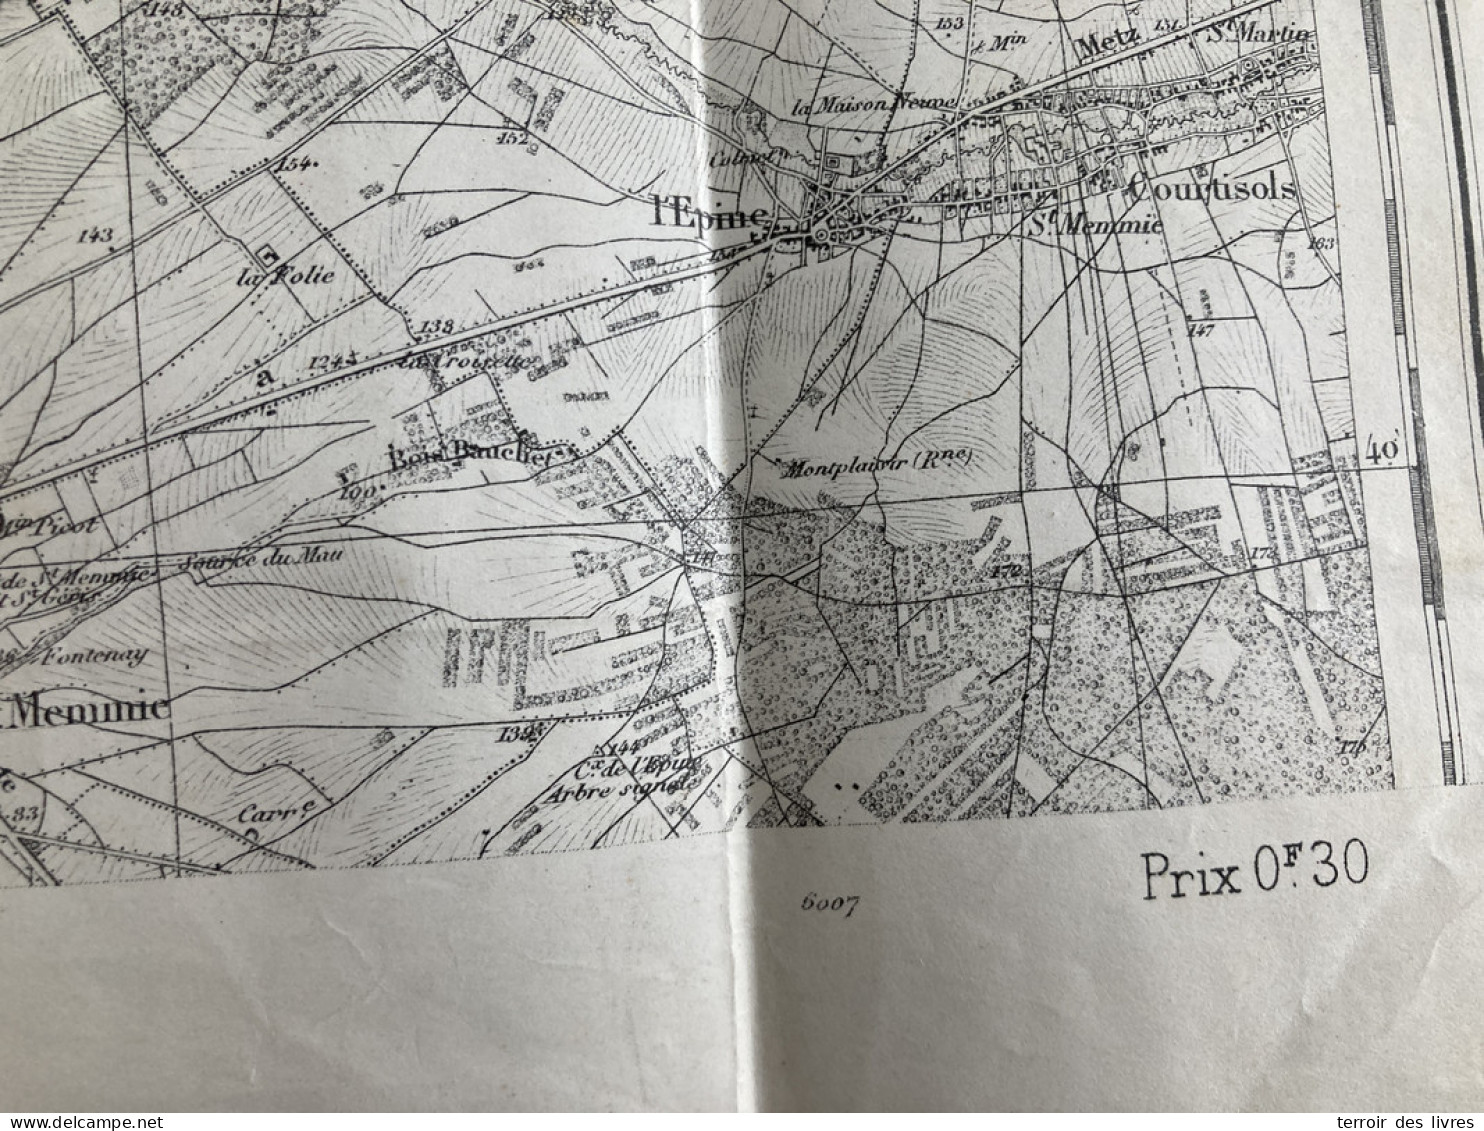 Carte état Major CHALONS 50 TYPE 1889 1896 54x34cm LA VEUVE DAMPIERRE-AU-TEMPLE VADENAY CUPERLY ST-ETIENNE-AU-TEMPLE BOU - Geographical Maps